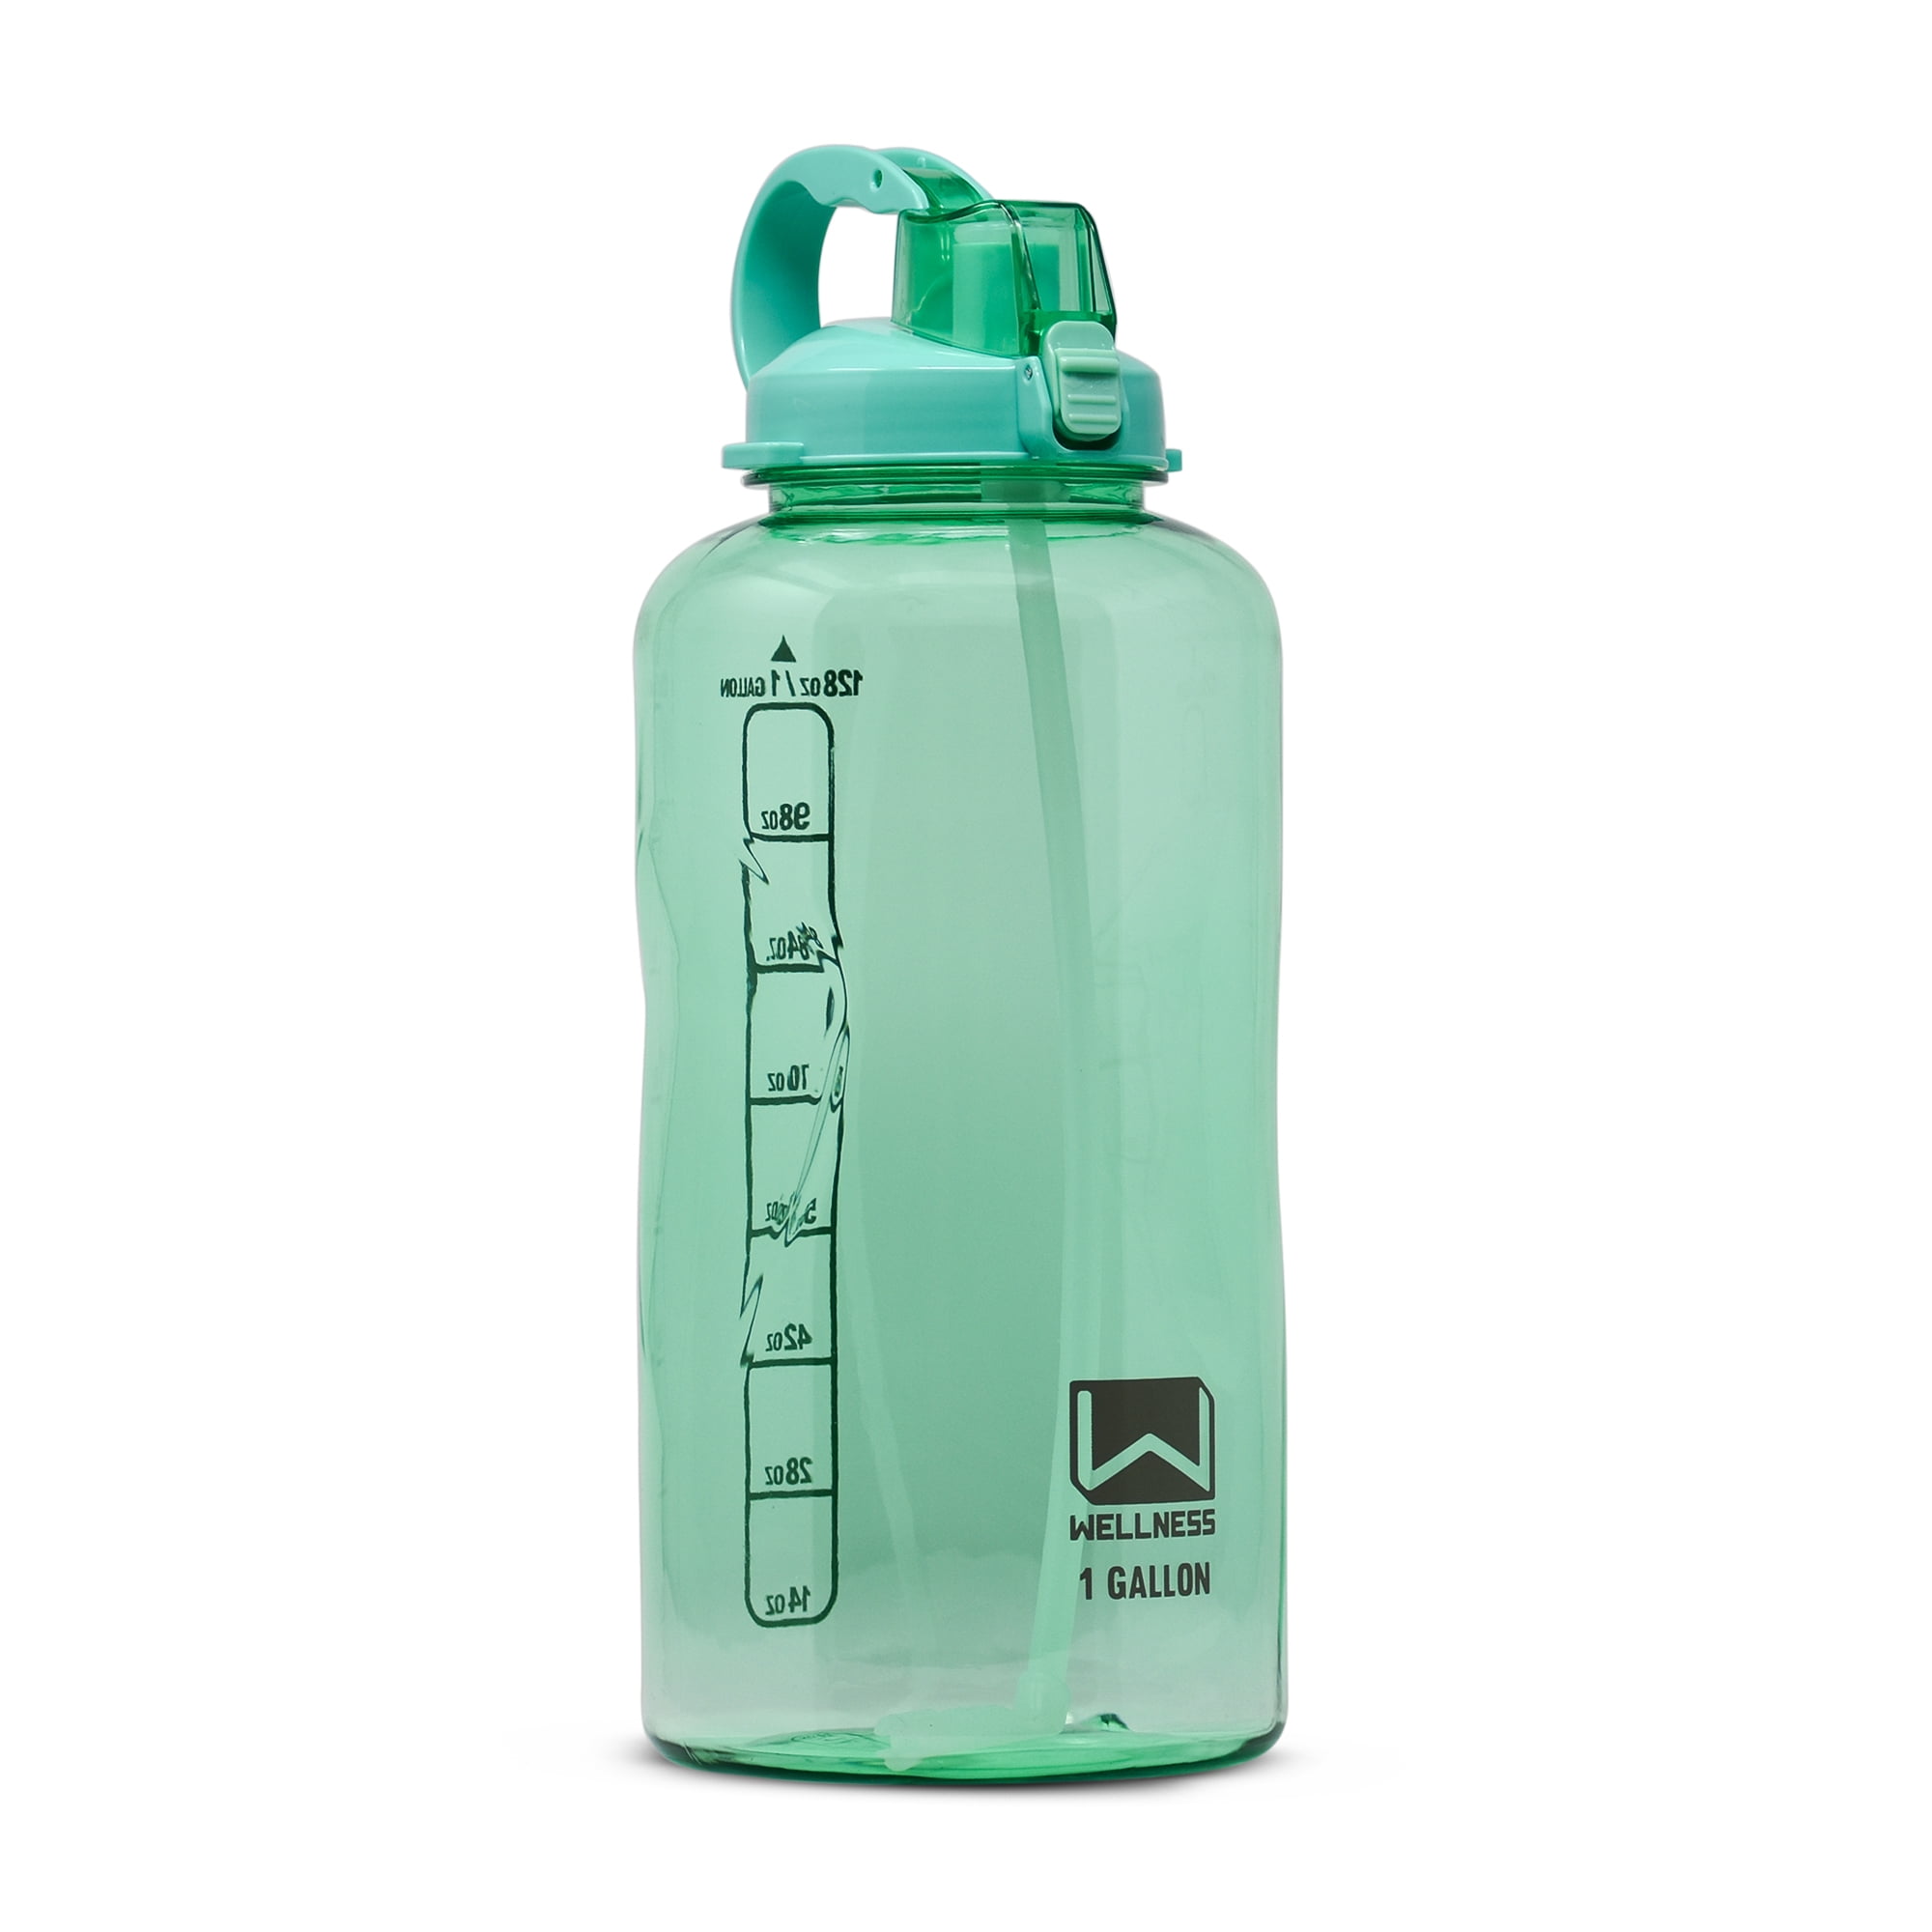 Fidus Water Bottle Review 2021